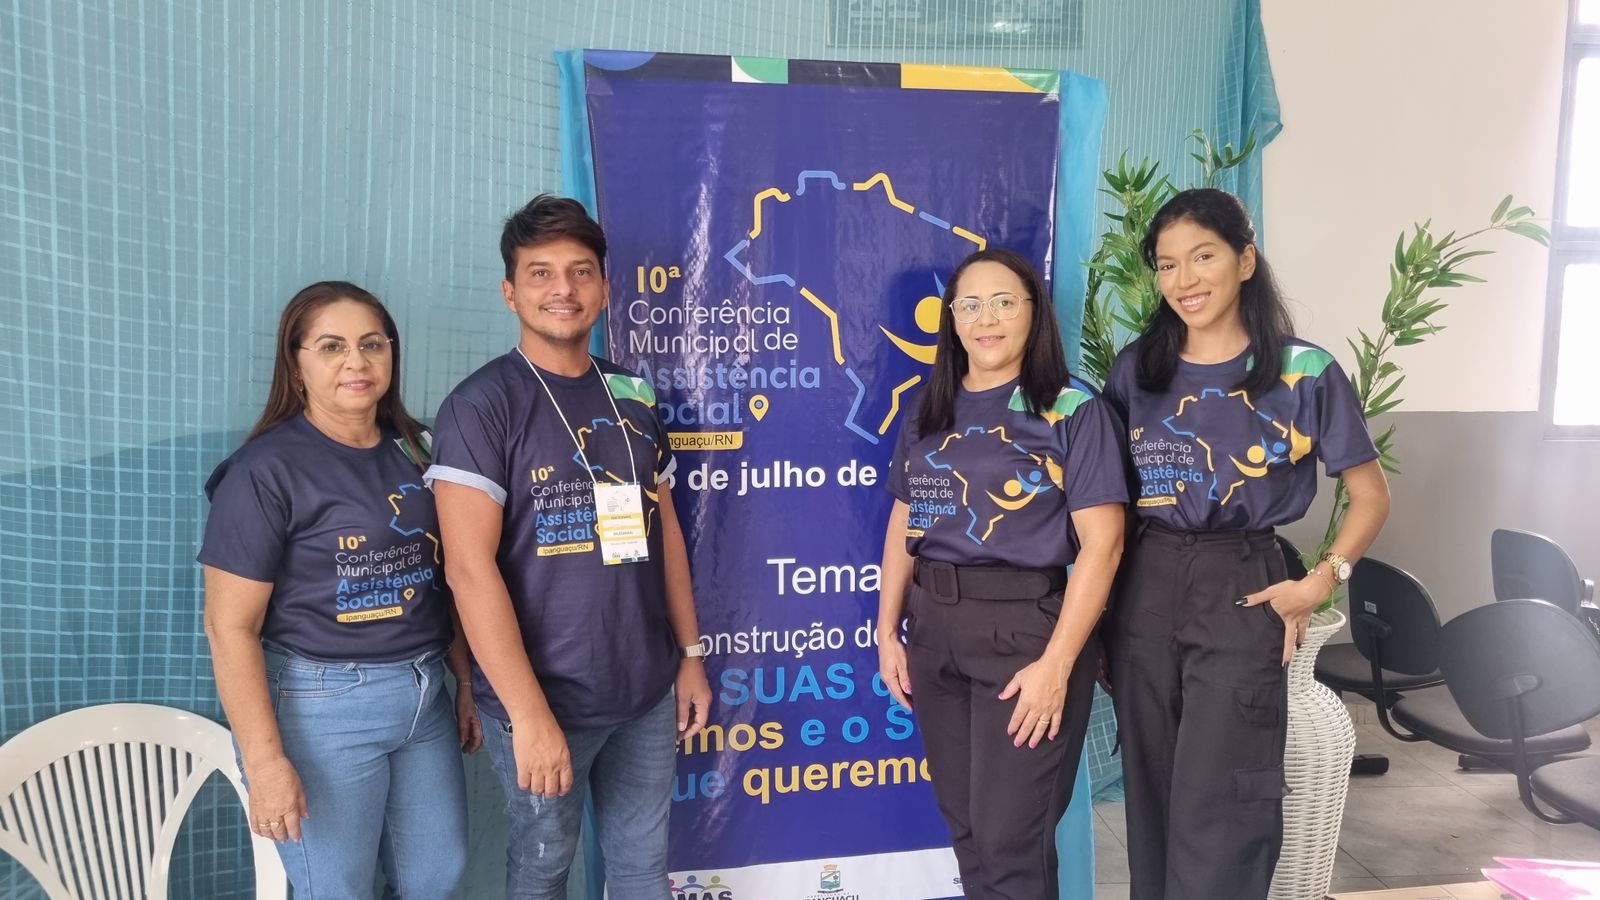 10ª Conferência Municipal de Assistência Social em Ipanguaçu debate a reconstrução do SUAS